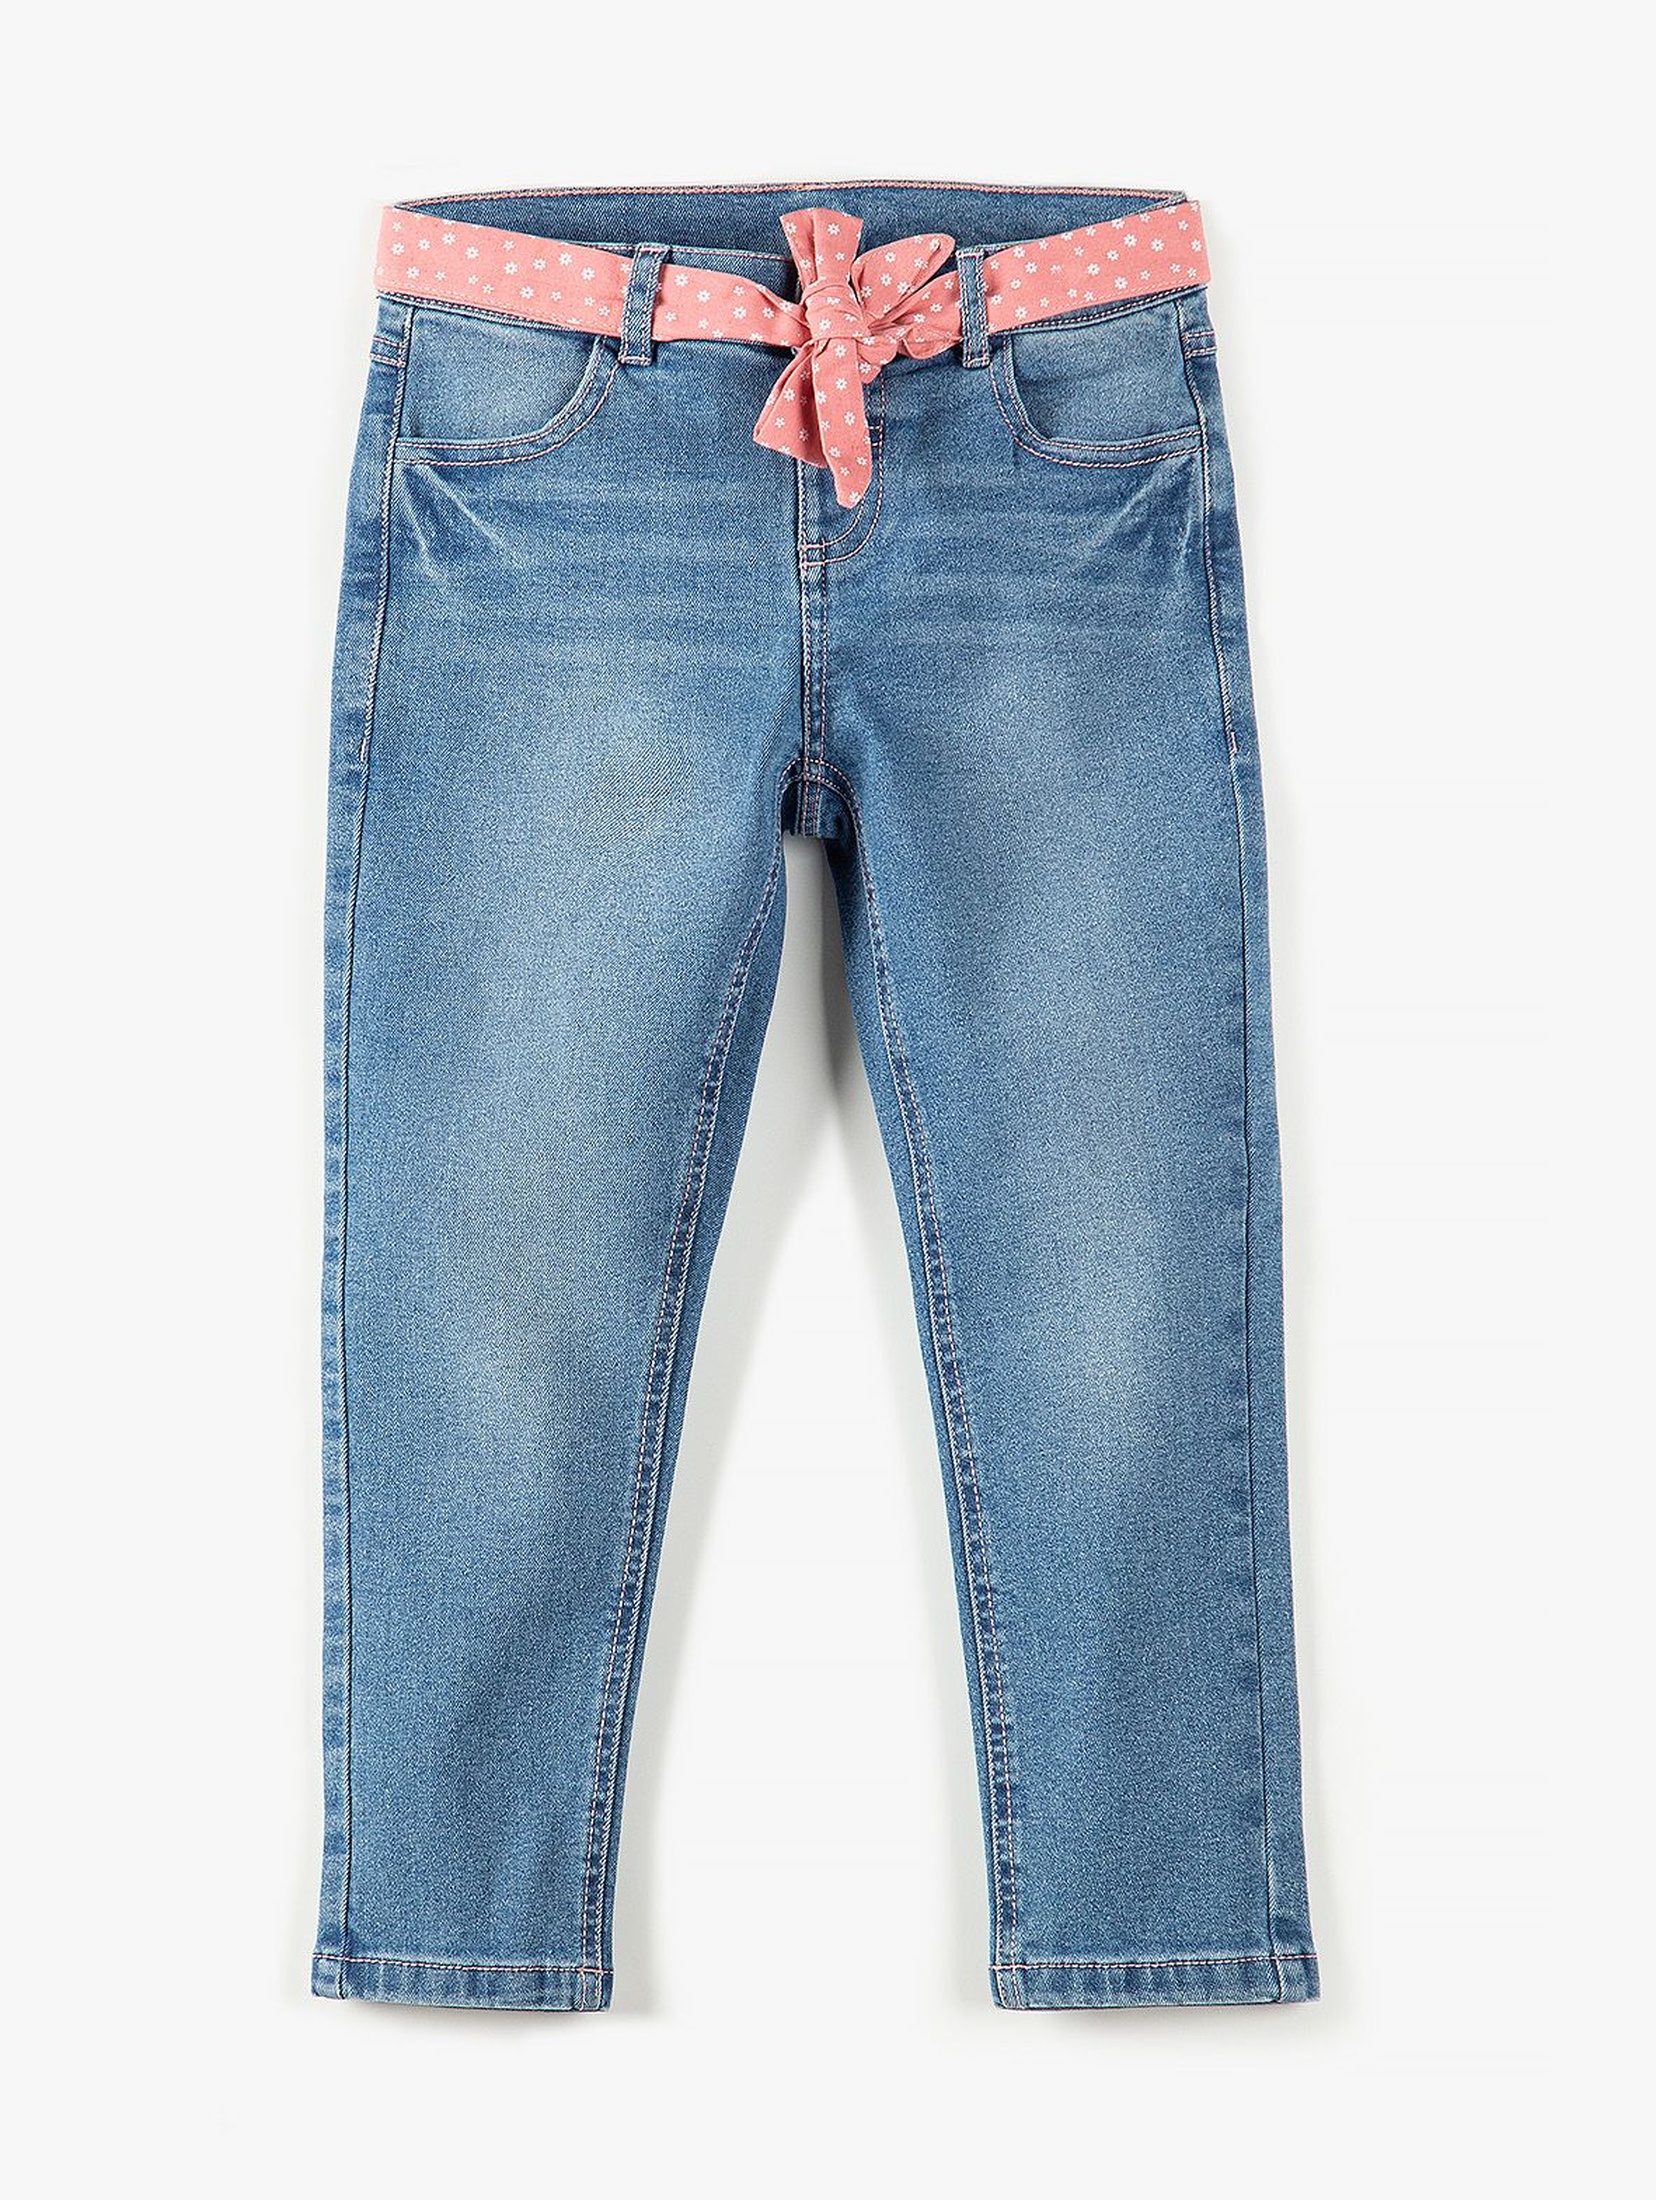 Spodnie dziewczęce jeansowe z różową ozdobną wstążka